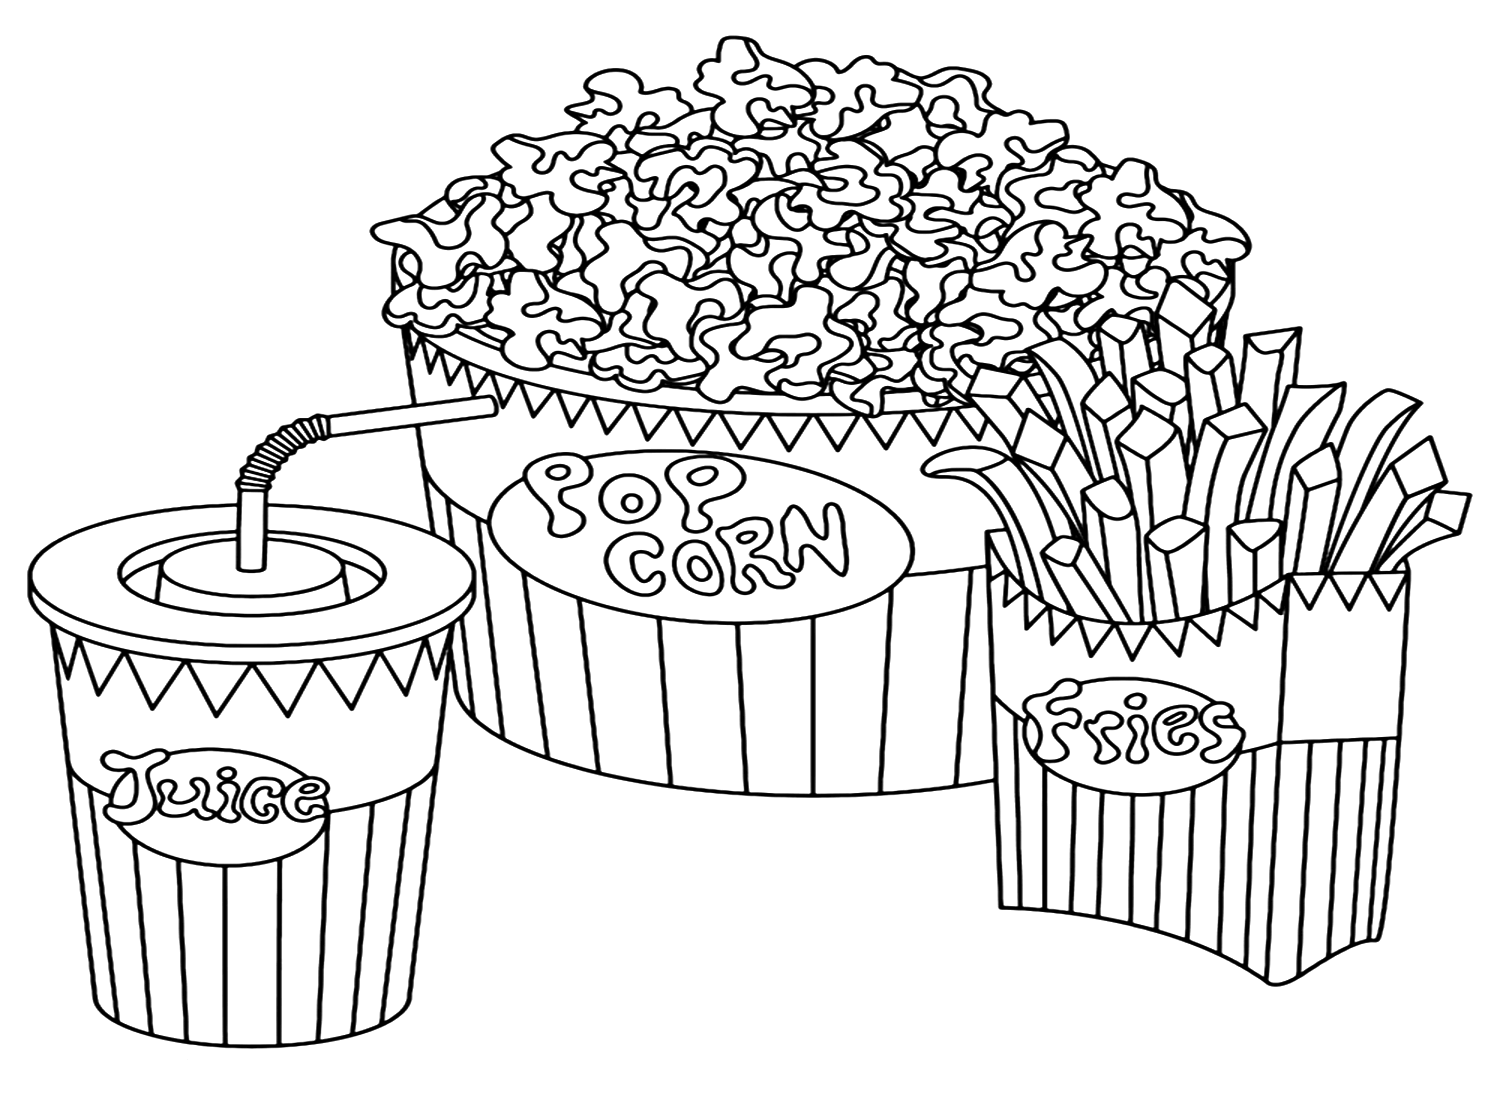 Popcorn kleurplaat voor kinderen van Popcorn